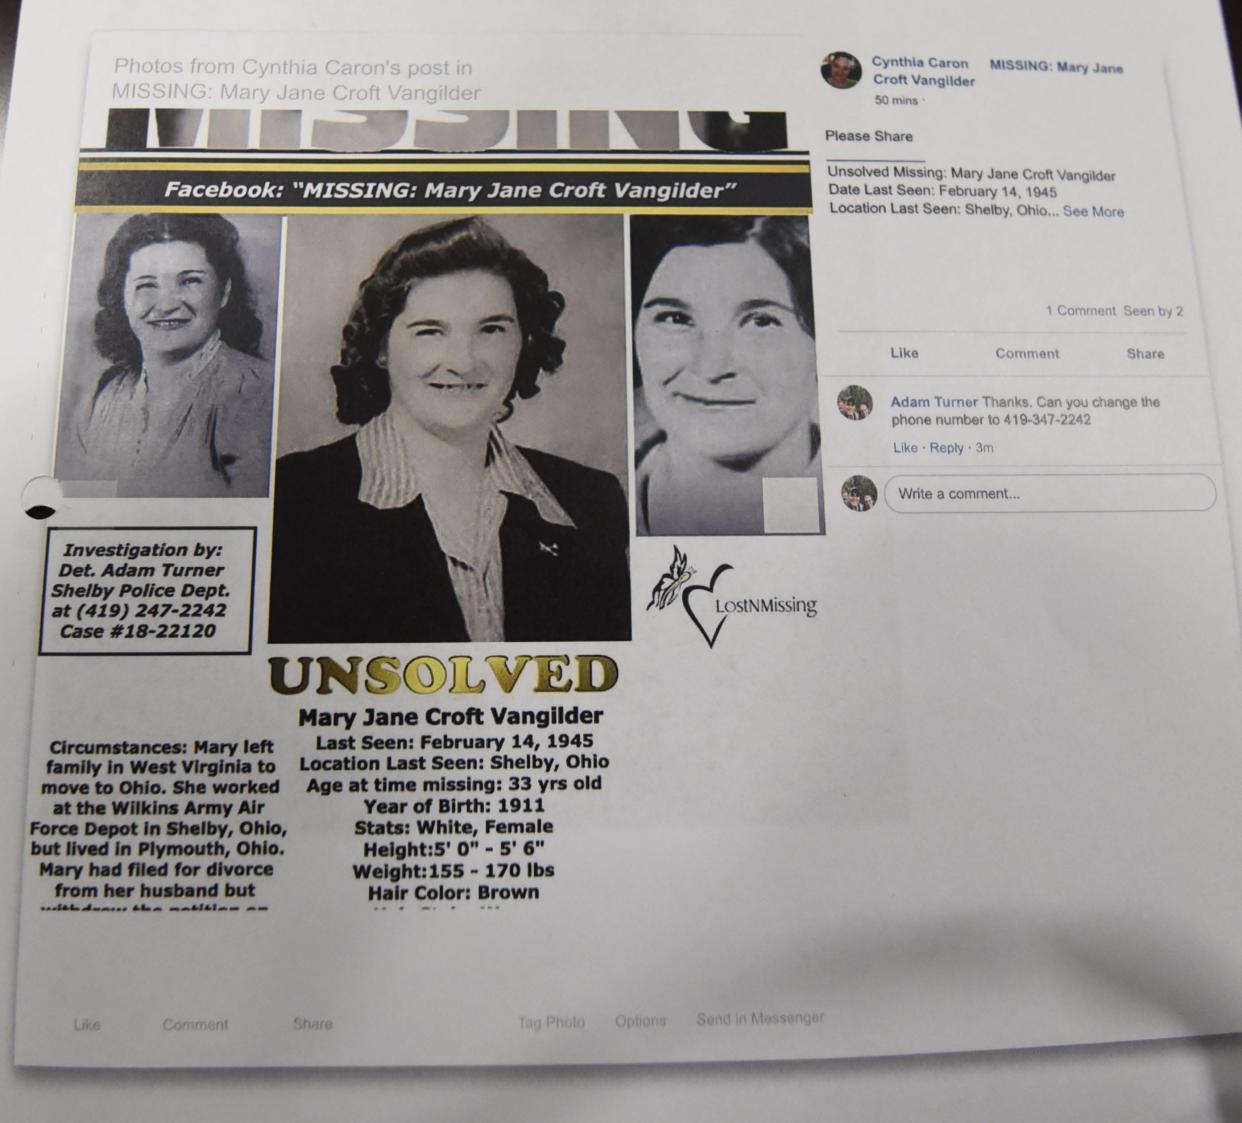 Mary Jane Croft Vangilder was last seen on Valentines Day, 1945.